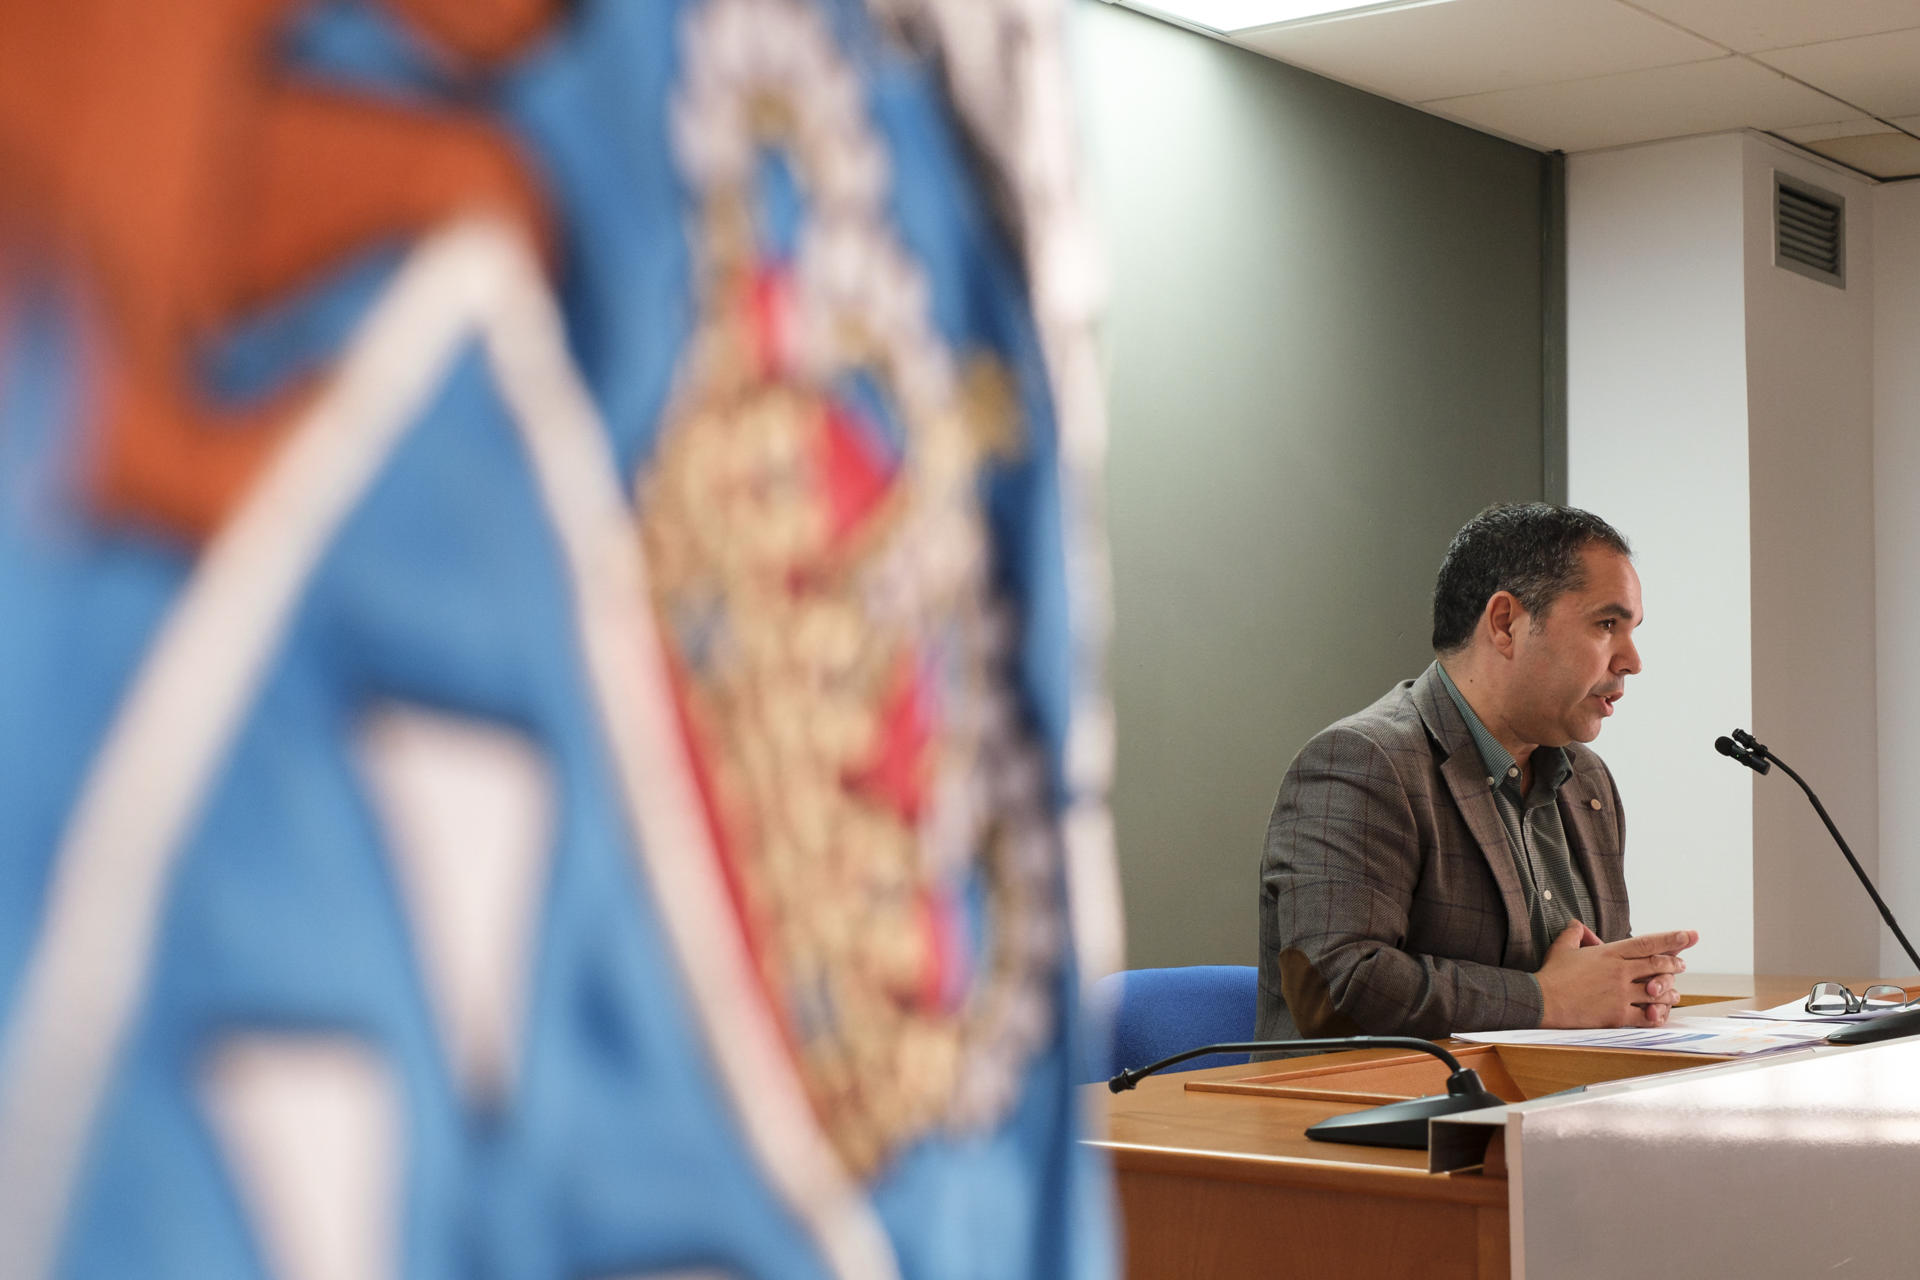 El viceconsejero de Empleo del Gobierno de Canarias, Gustavo Santana, hace declaraciones para valorar los datos de afiliación y desempleo de diciembre que afectan a la región presentados este martes por el Gobierno. EFE/Ángel Medina G.